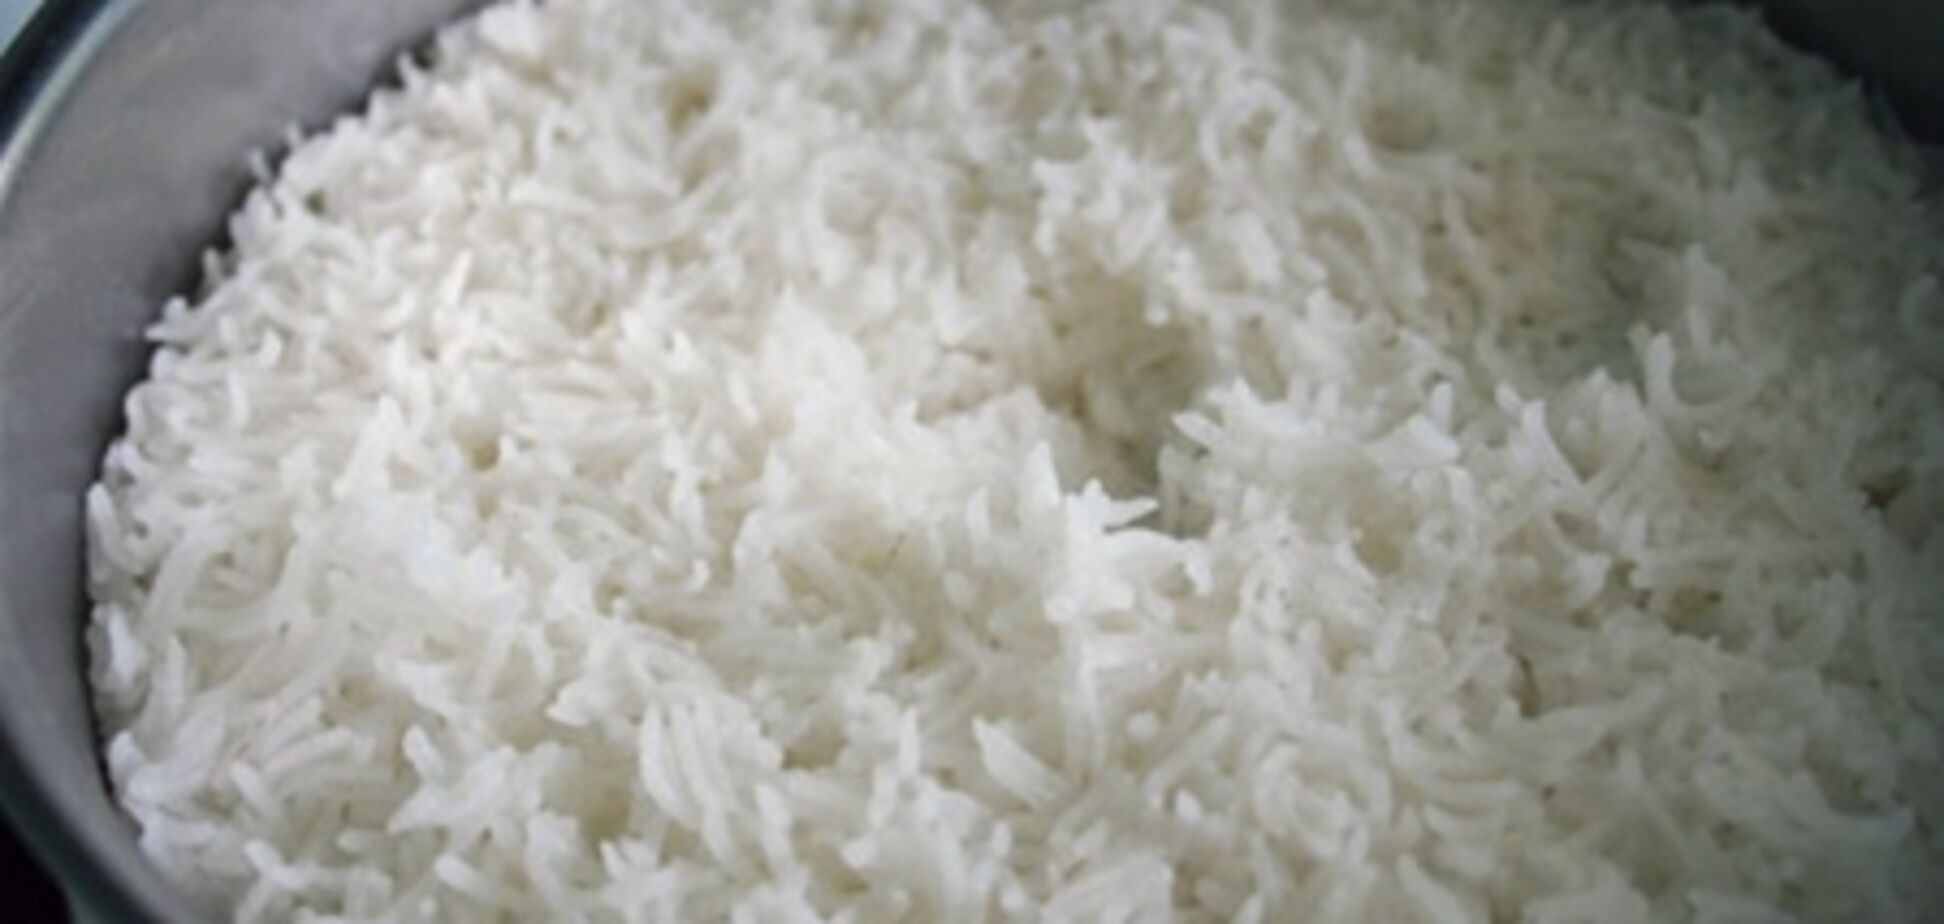 ООН: Цены на продукты выросли за счет риса и сахара